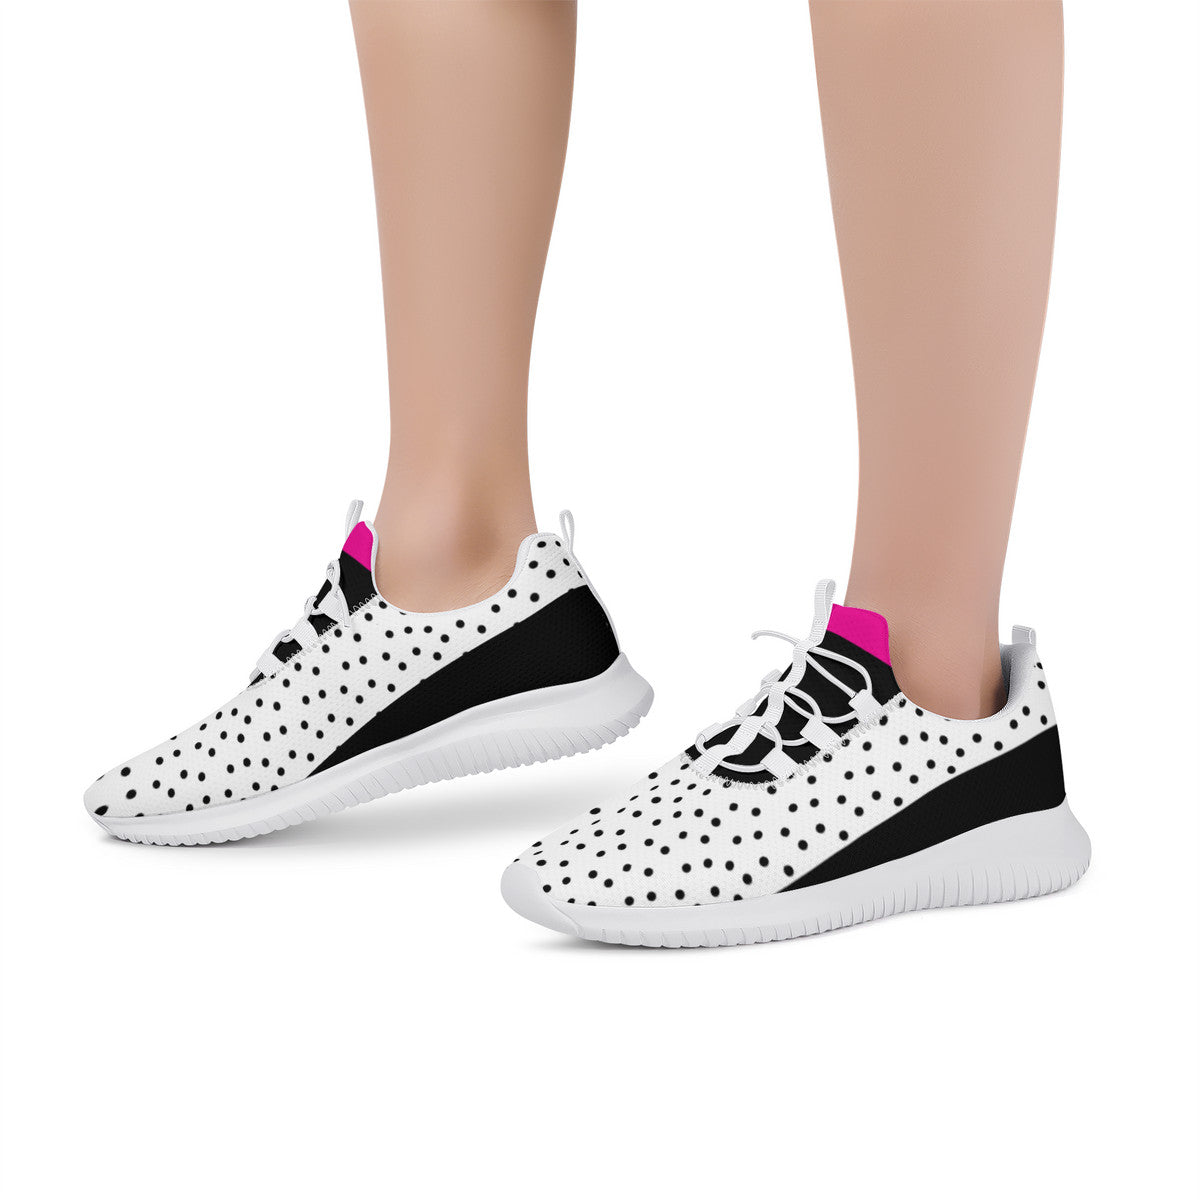 Fitness sneaker - Polka Dot - White